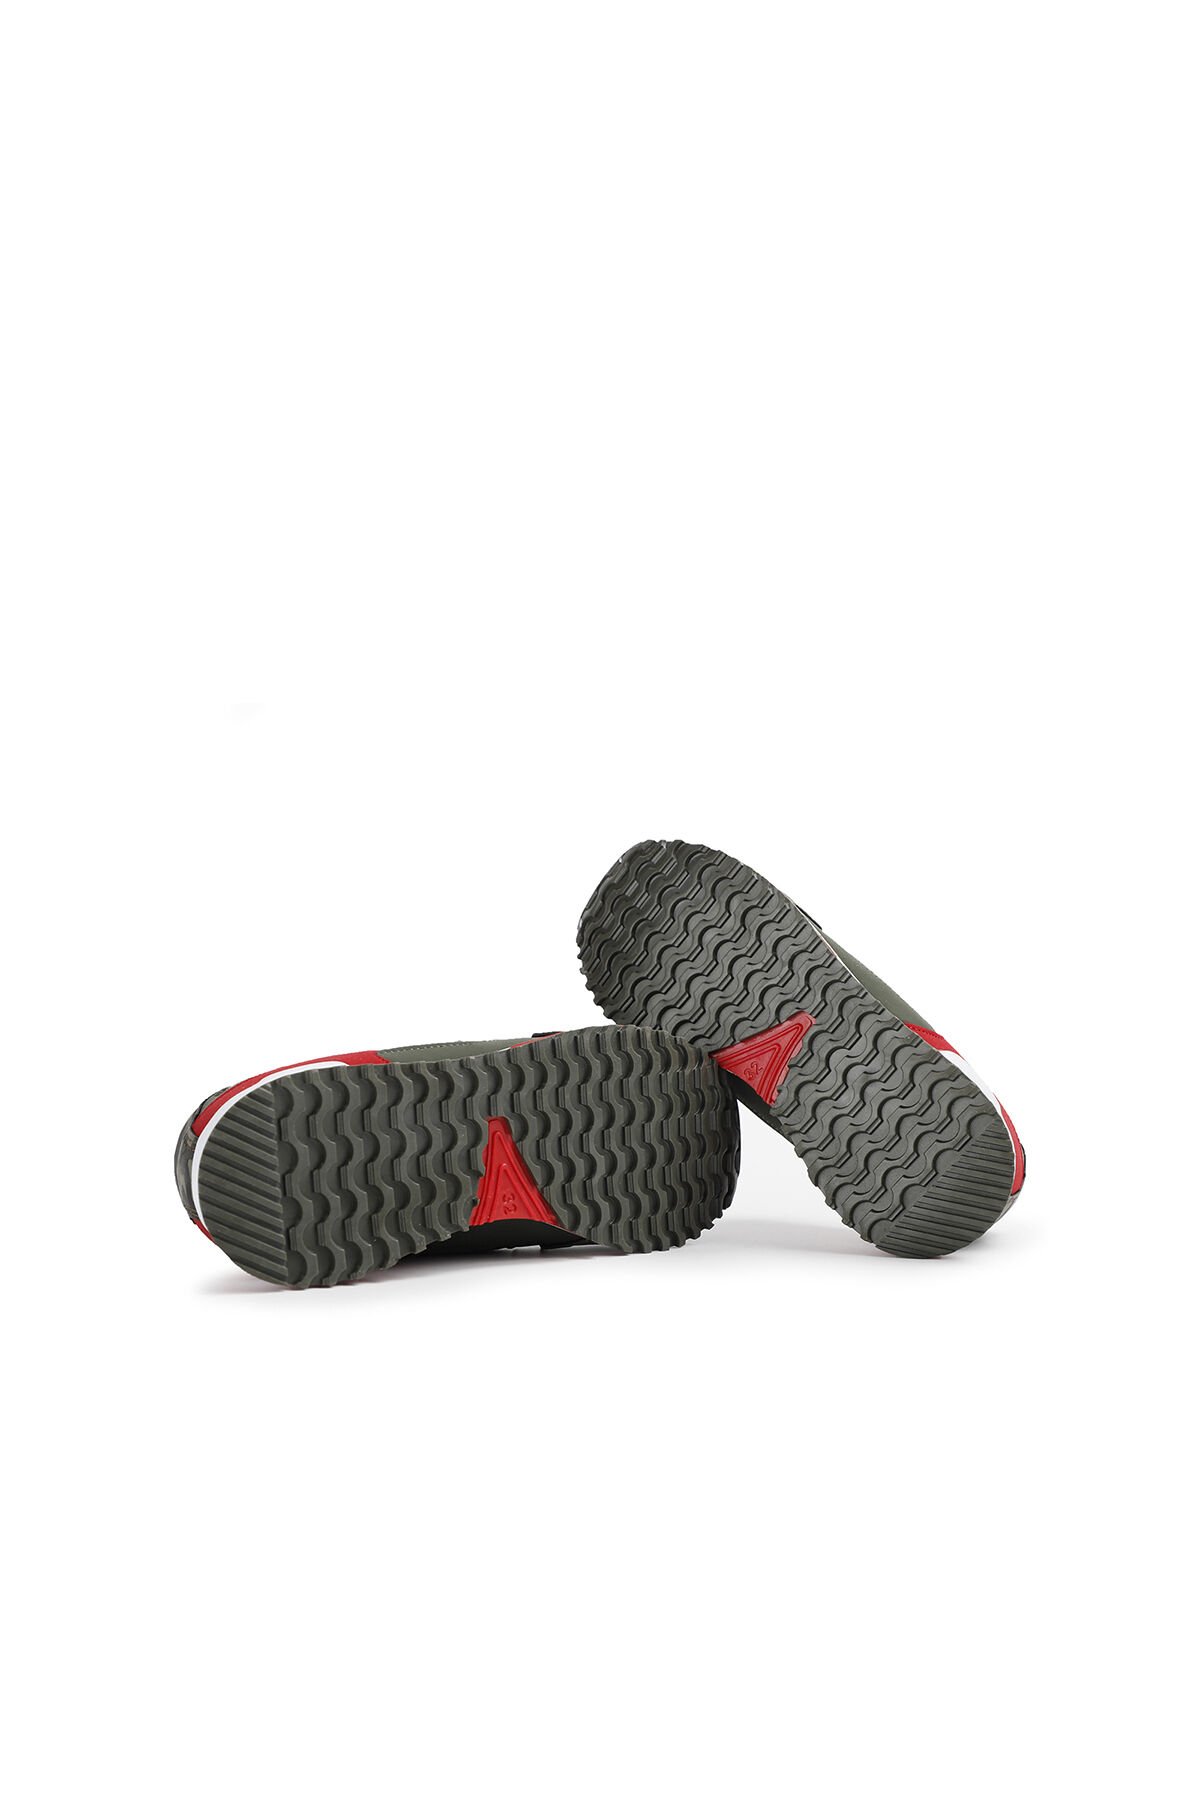 Slazenger EDMOND KTN Sneaker Erkek Çocuk Ayakkabı Haki Kamuflaj - Thumbnail